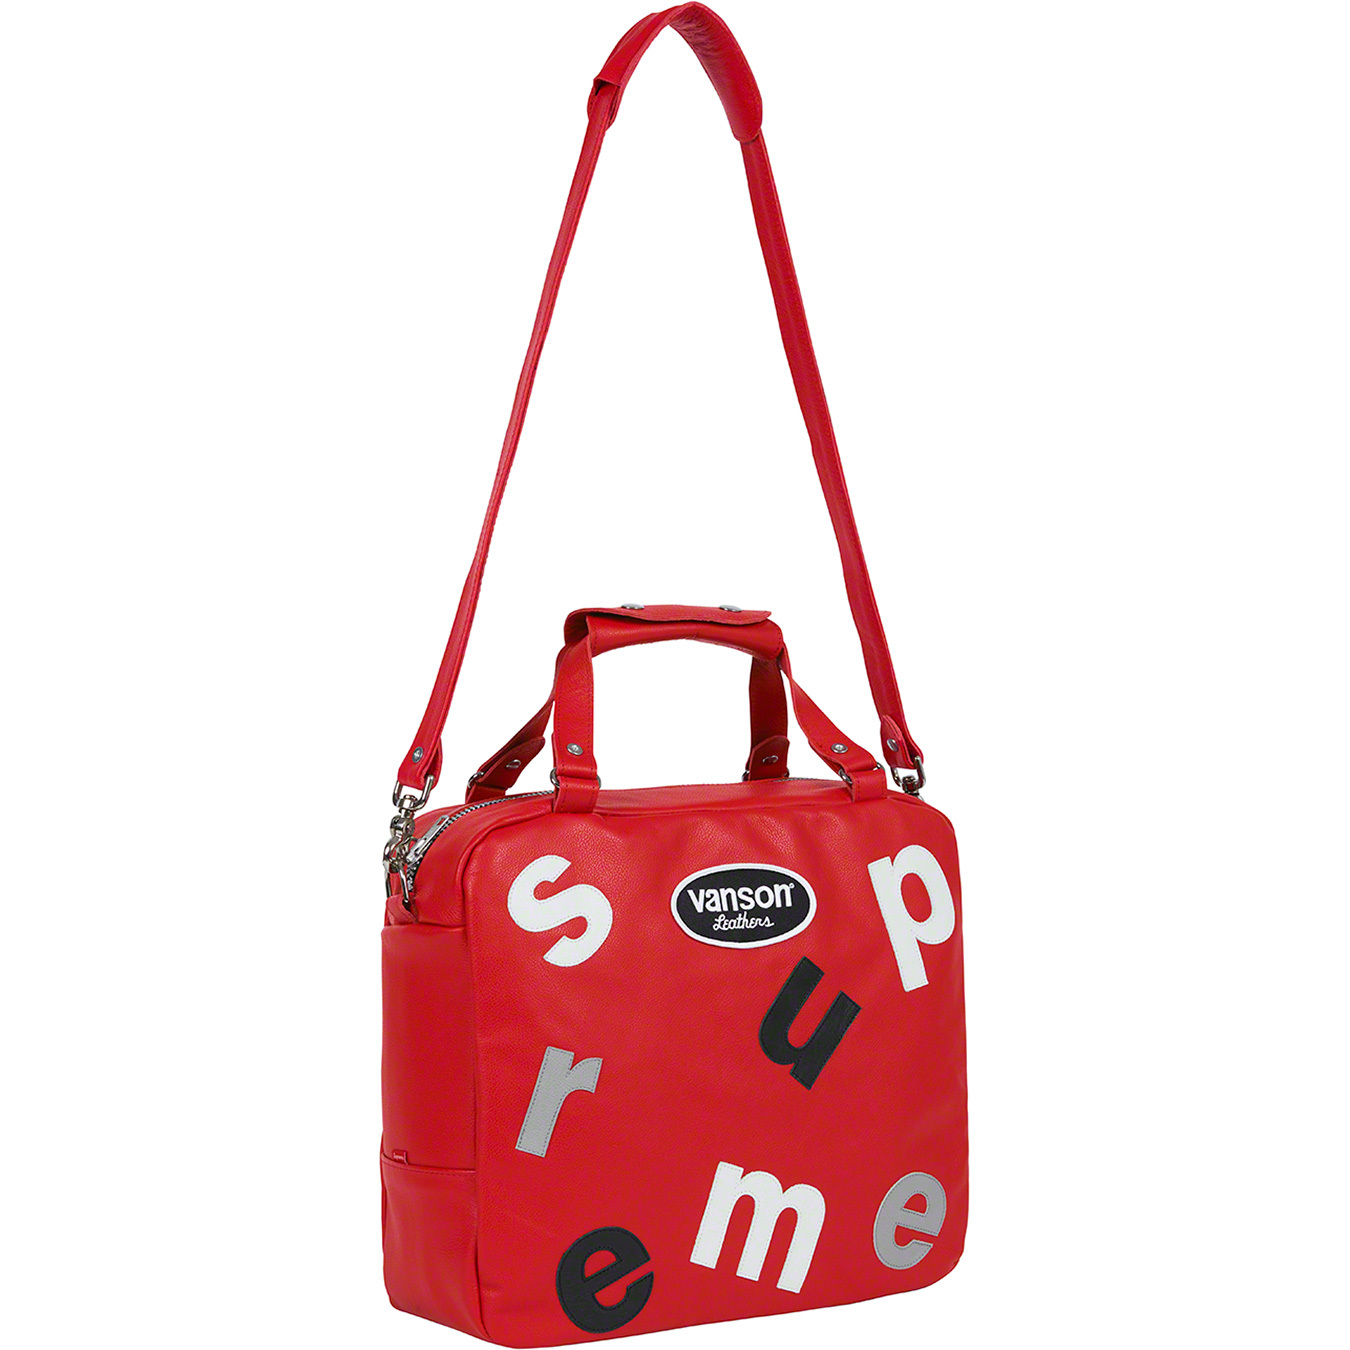 Vanson Leathers Letters Bag - spring summer 2020 - Supreme